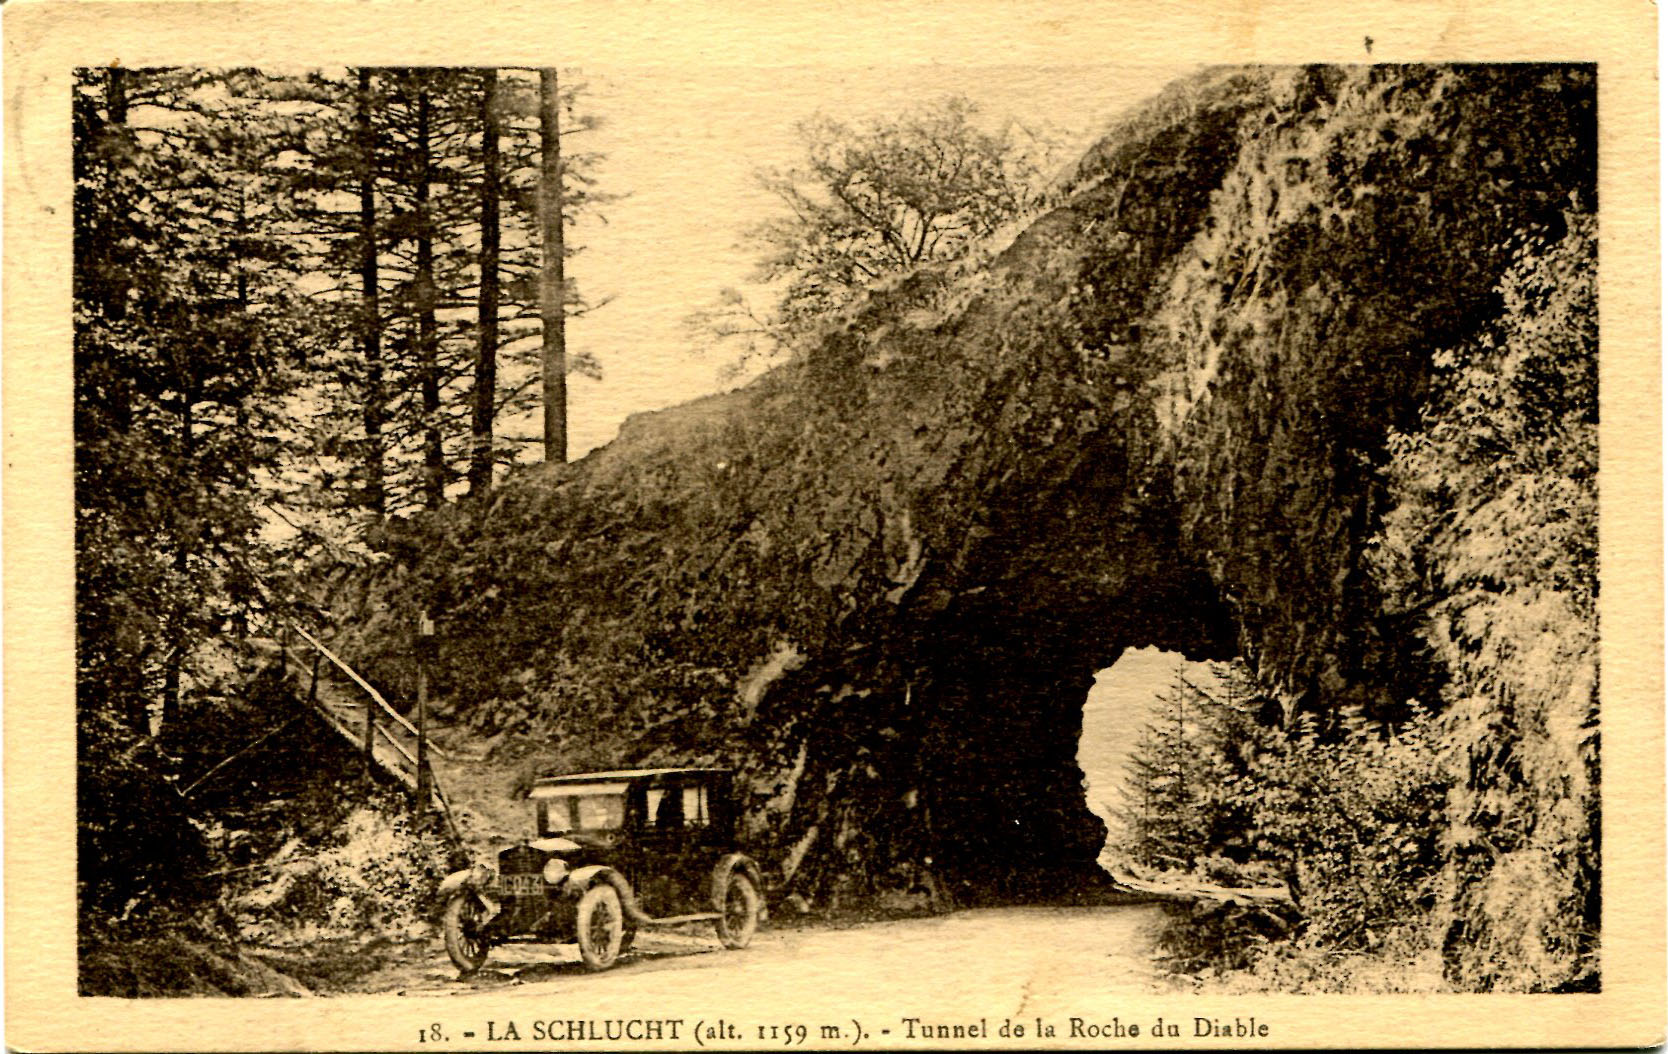 255 - Tunnel de la Roche du Diable